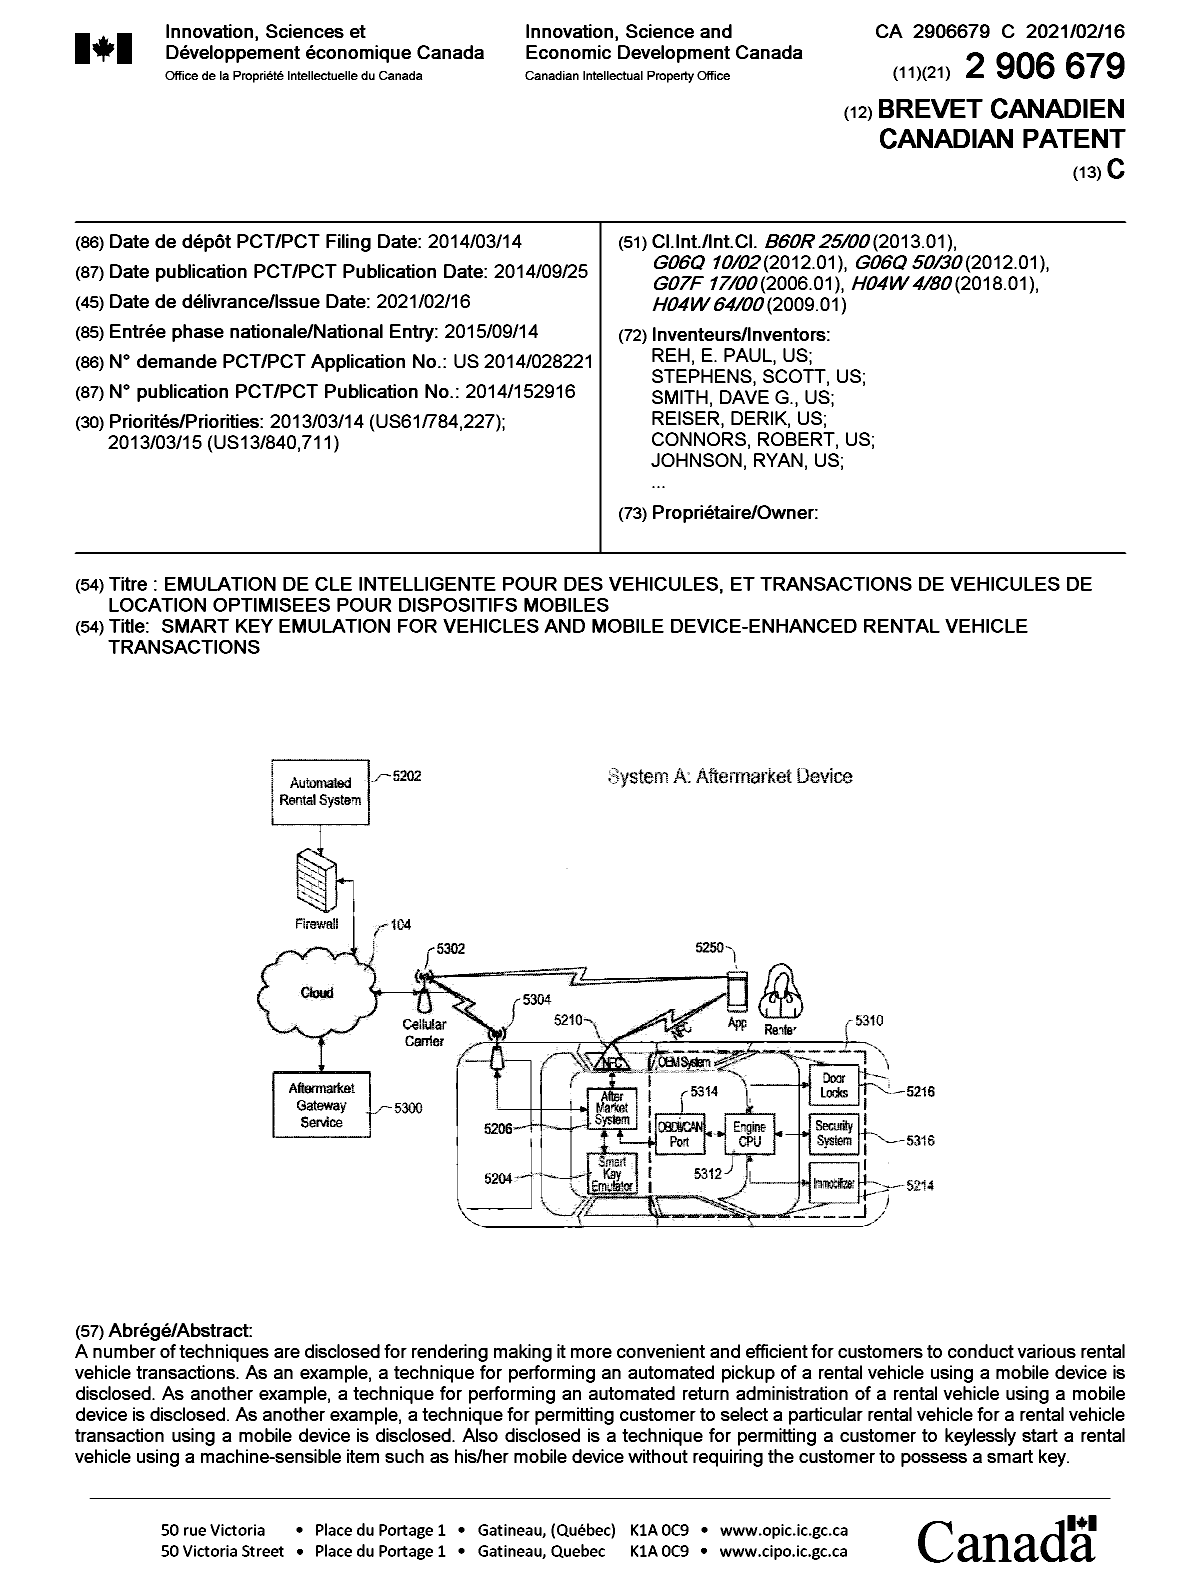 Document de brevet canadien 2906679. Page couverture 20210122. Image 1 de 2